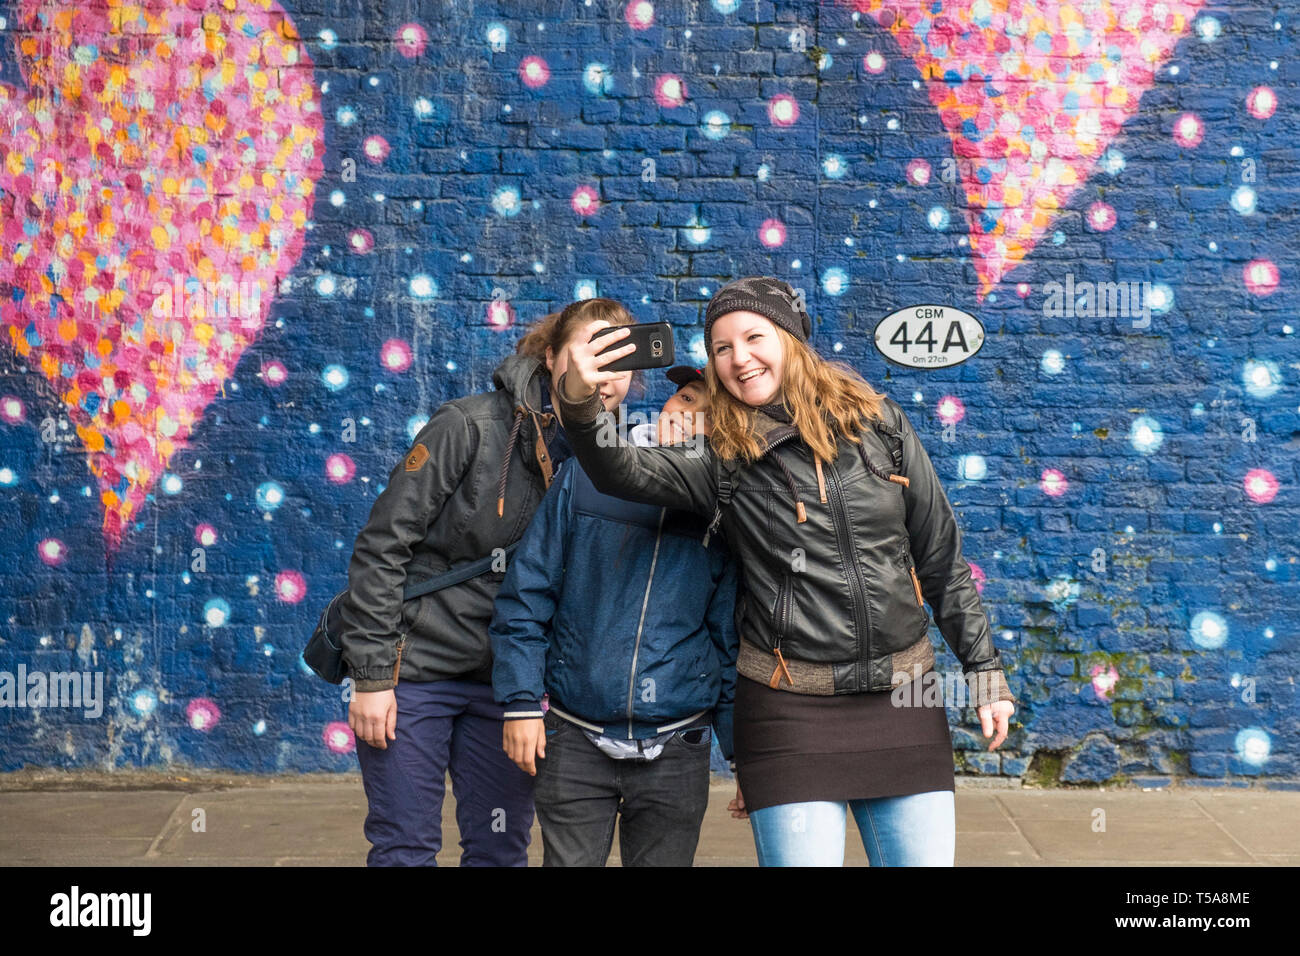 I turisti avendo divertimento prendendo un selfie davanti a un grande dipinto murale su una parete in una strada di Londra. Foto Stock